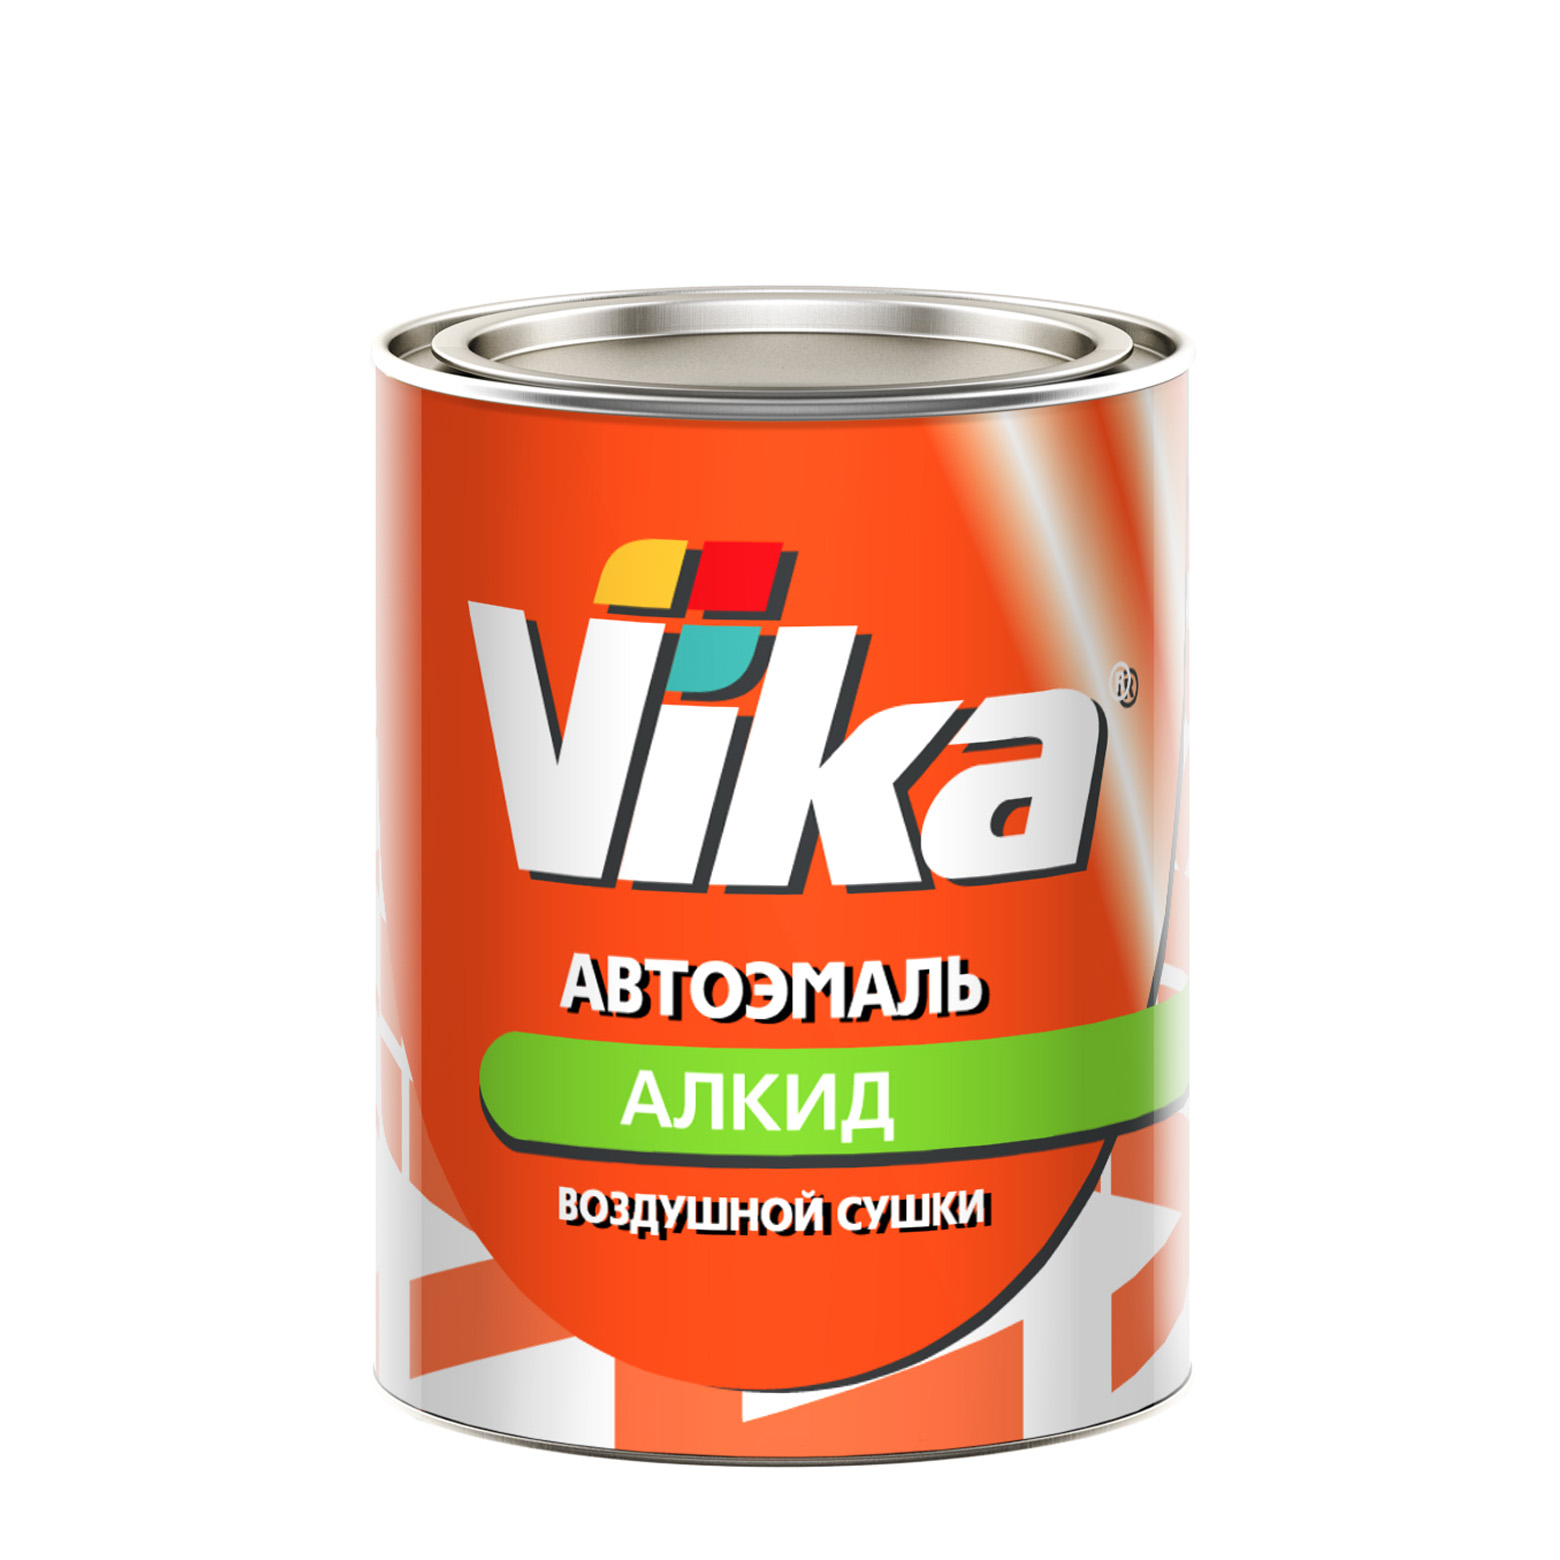 Фото 1 - Автоэмаль Vika-60, цвет 325 Морская пучина алкидная глянцевая естественной сушки - 0,8 кг.